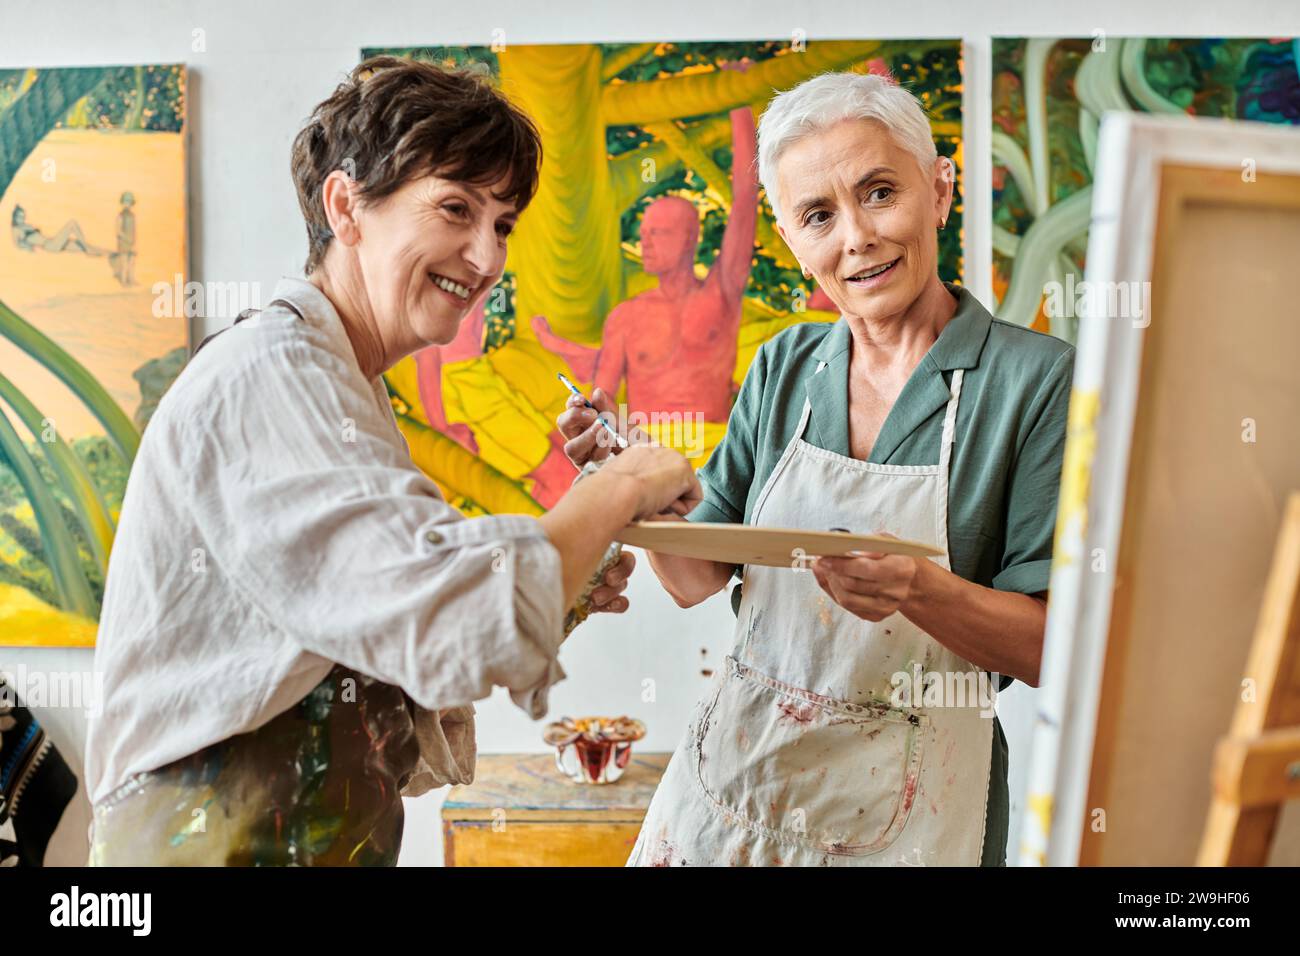 Lächelnde reife Frauen mit Farbpalette, die während des Meisterkurses im Kunststudio Staffelei betrachten Stockfoto